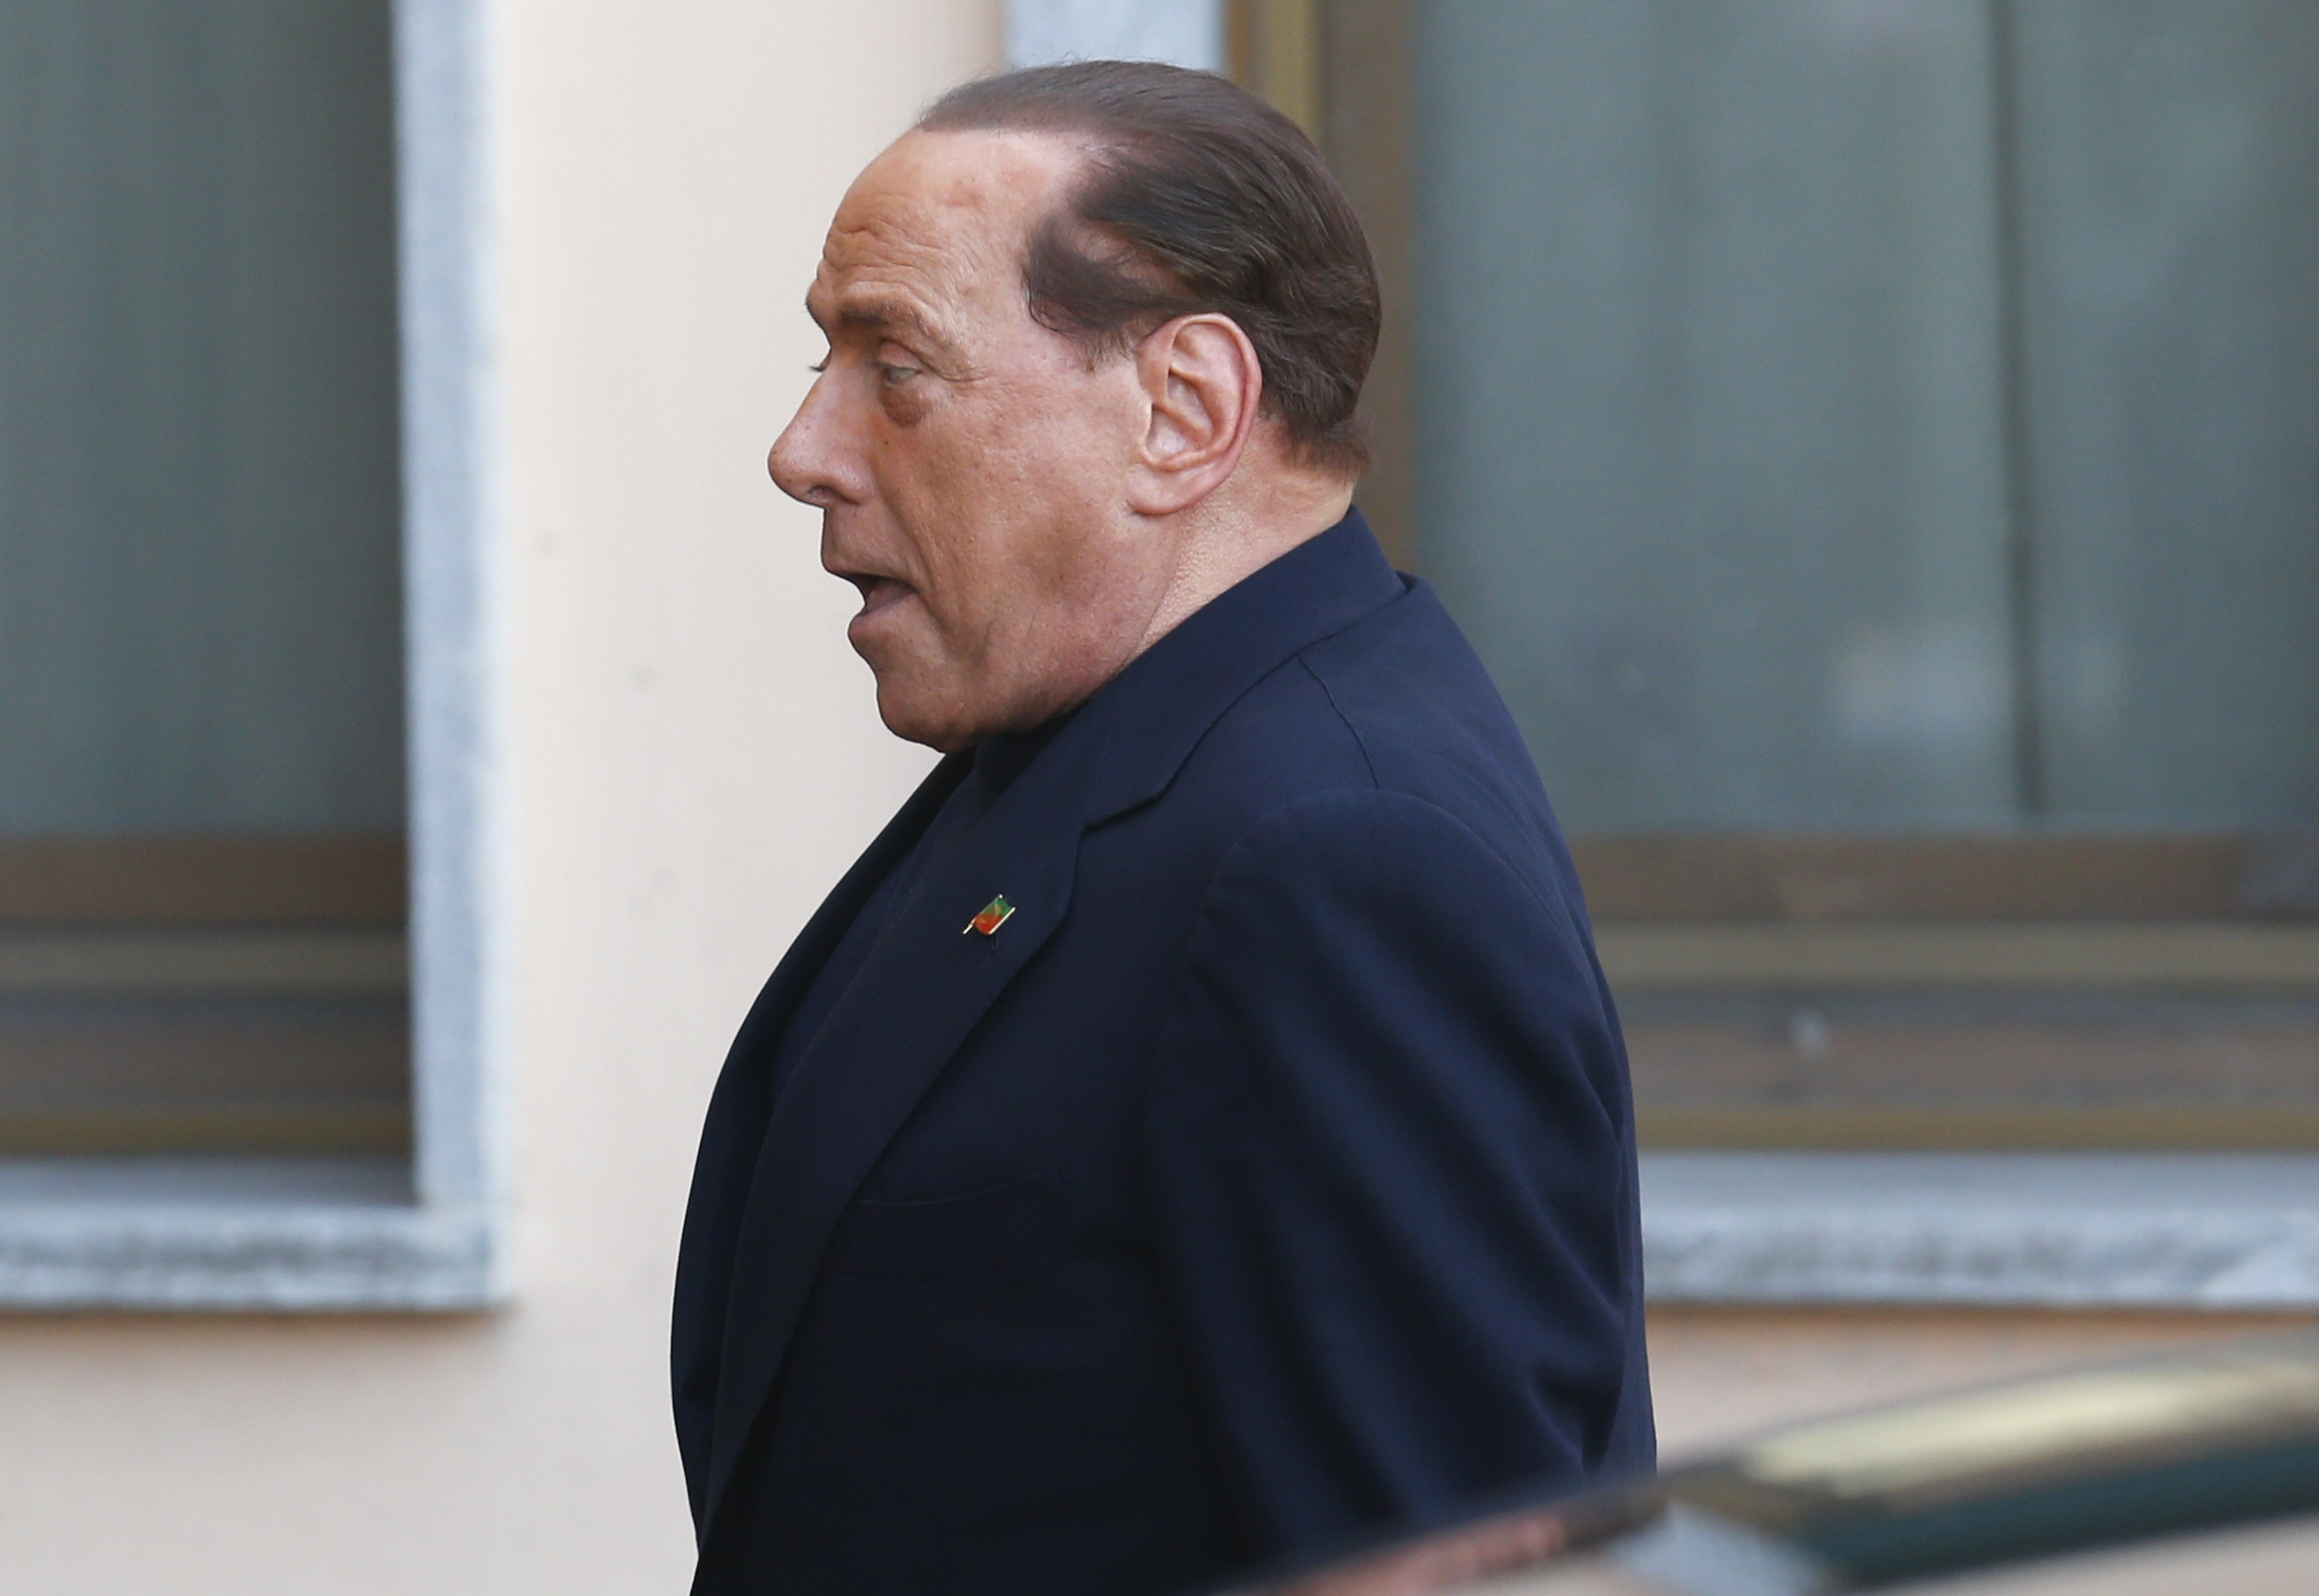 Silvio Berlusconi, “el resucitado” de la política italiana